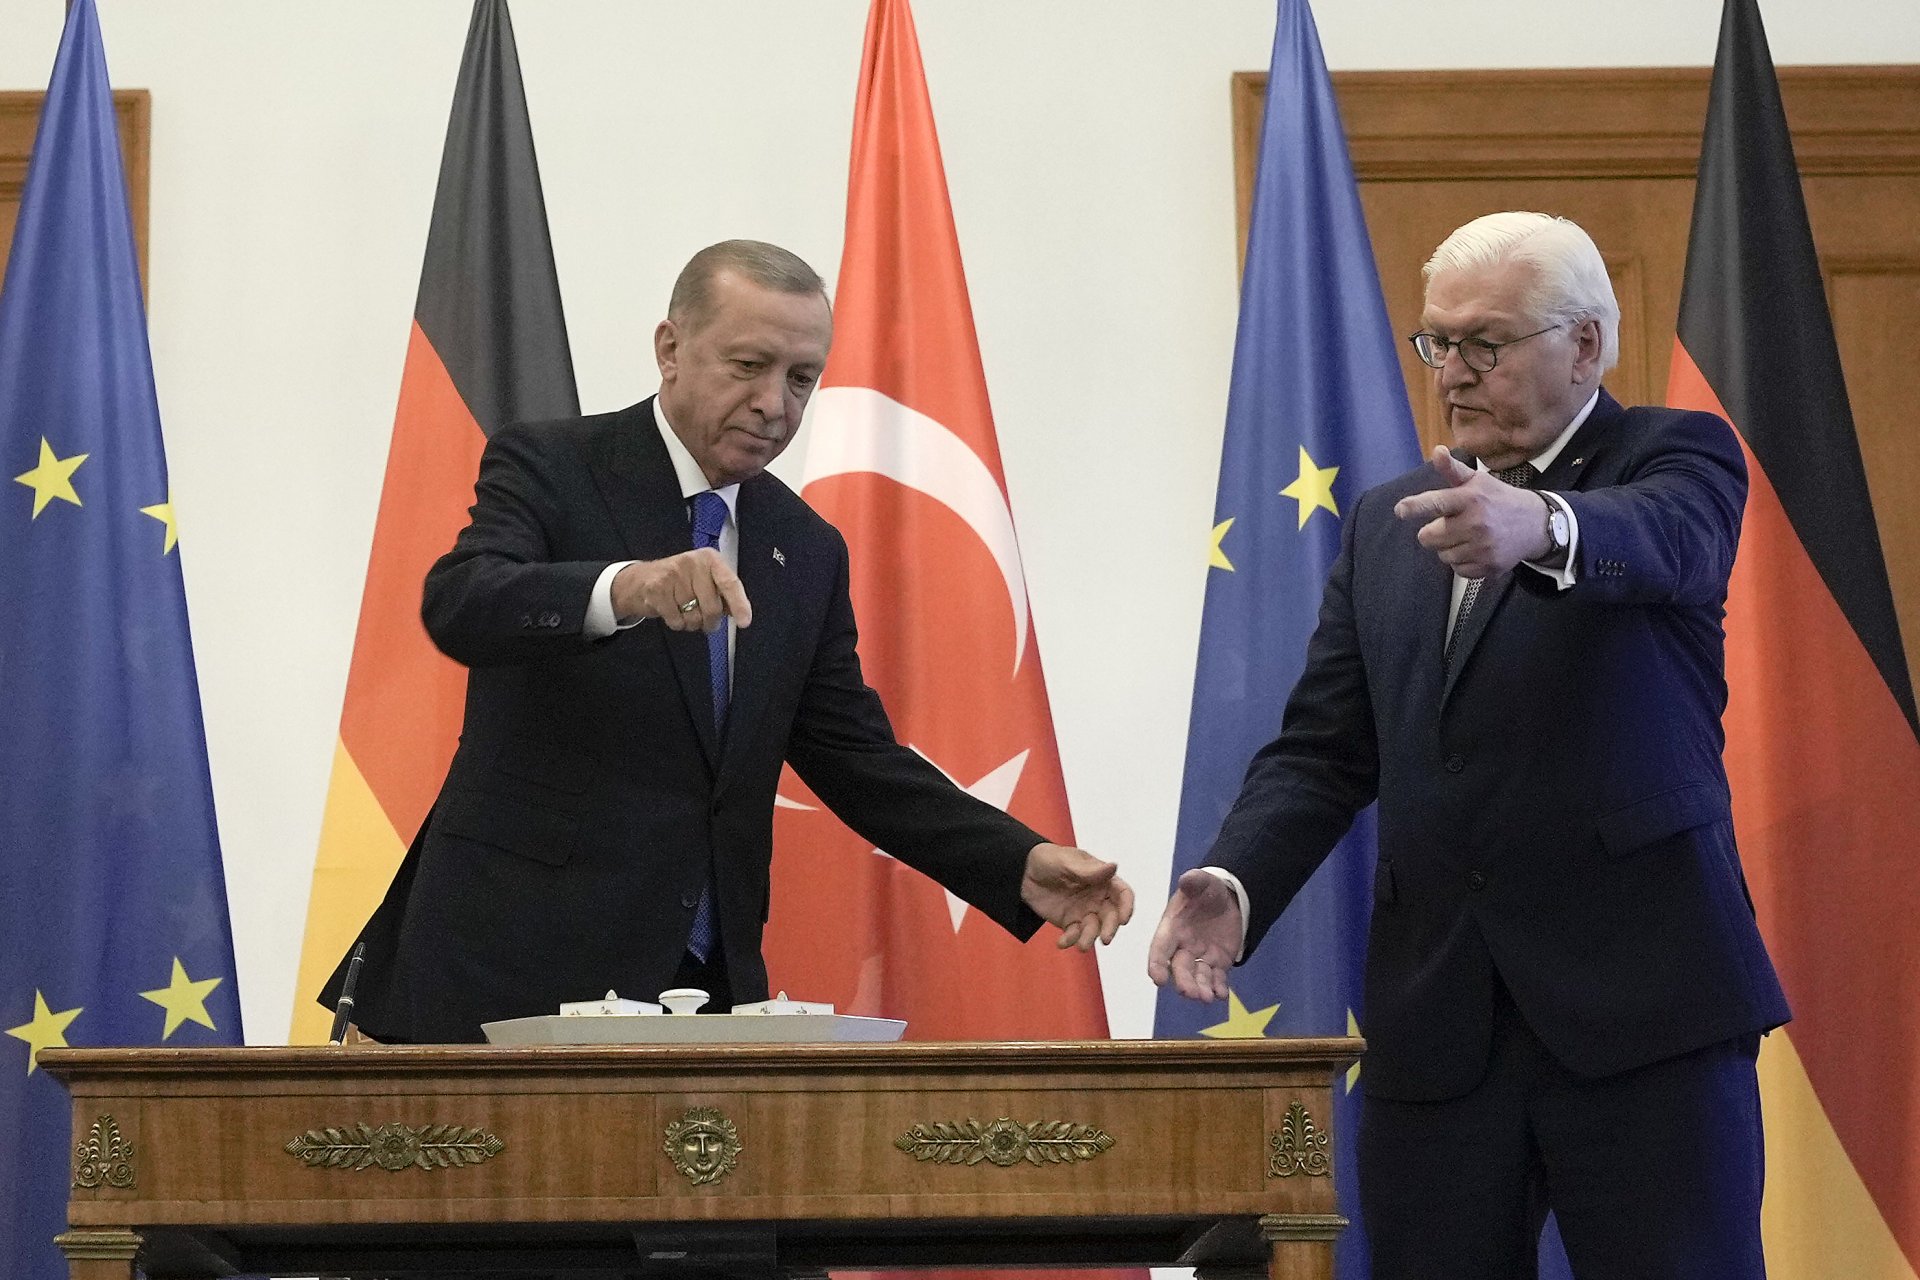 Реджеп Тайип Ердоган и Франк-Валтер Щайнмайер по време на общата им пресконференция